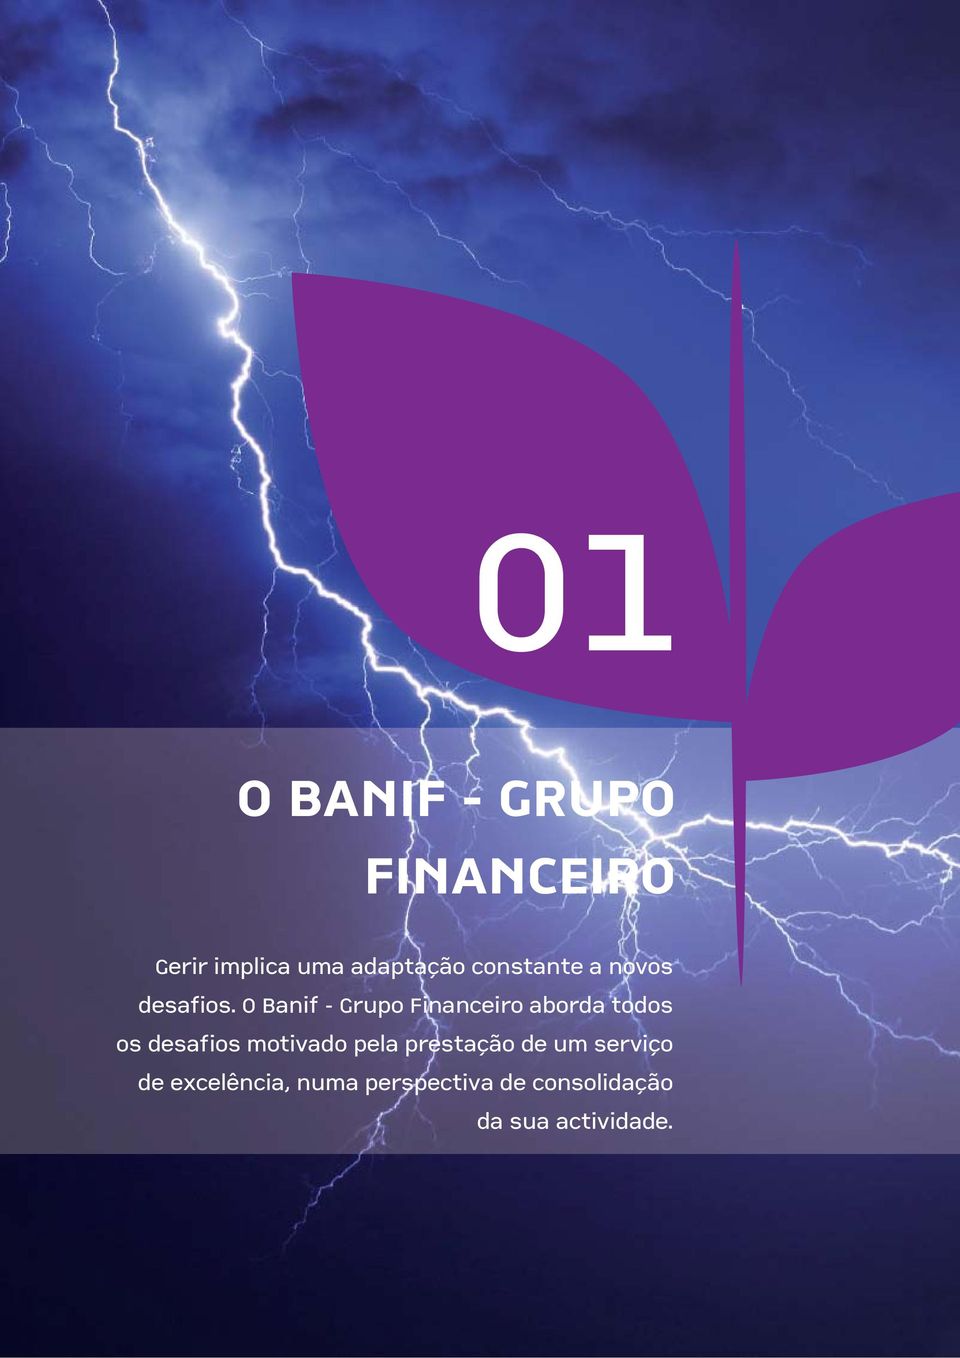 O Banif - Grupo Financeiro aborda todos os desafios motivado